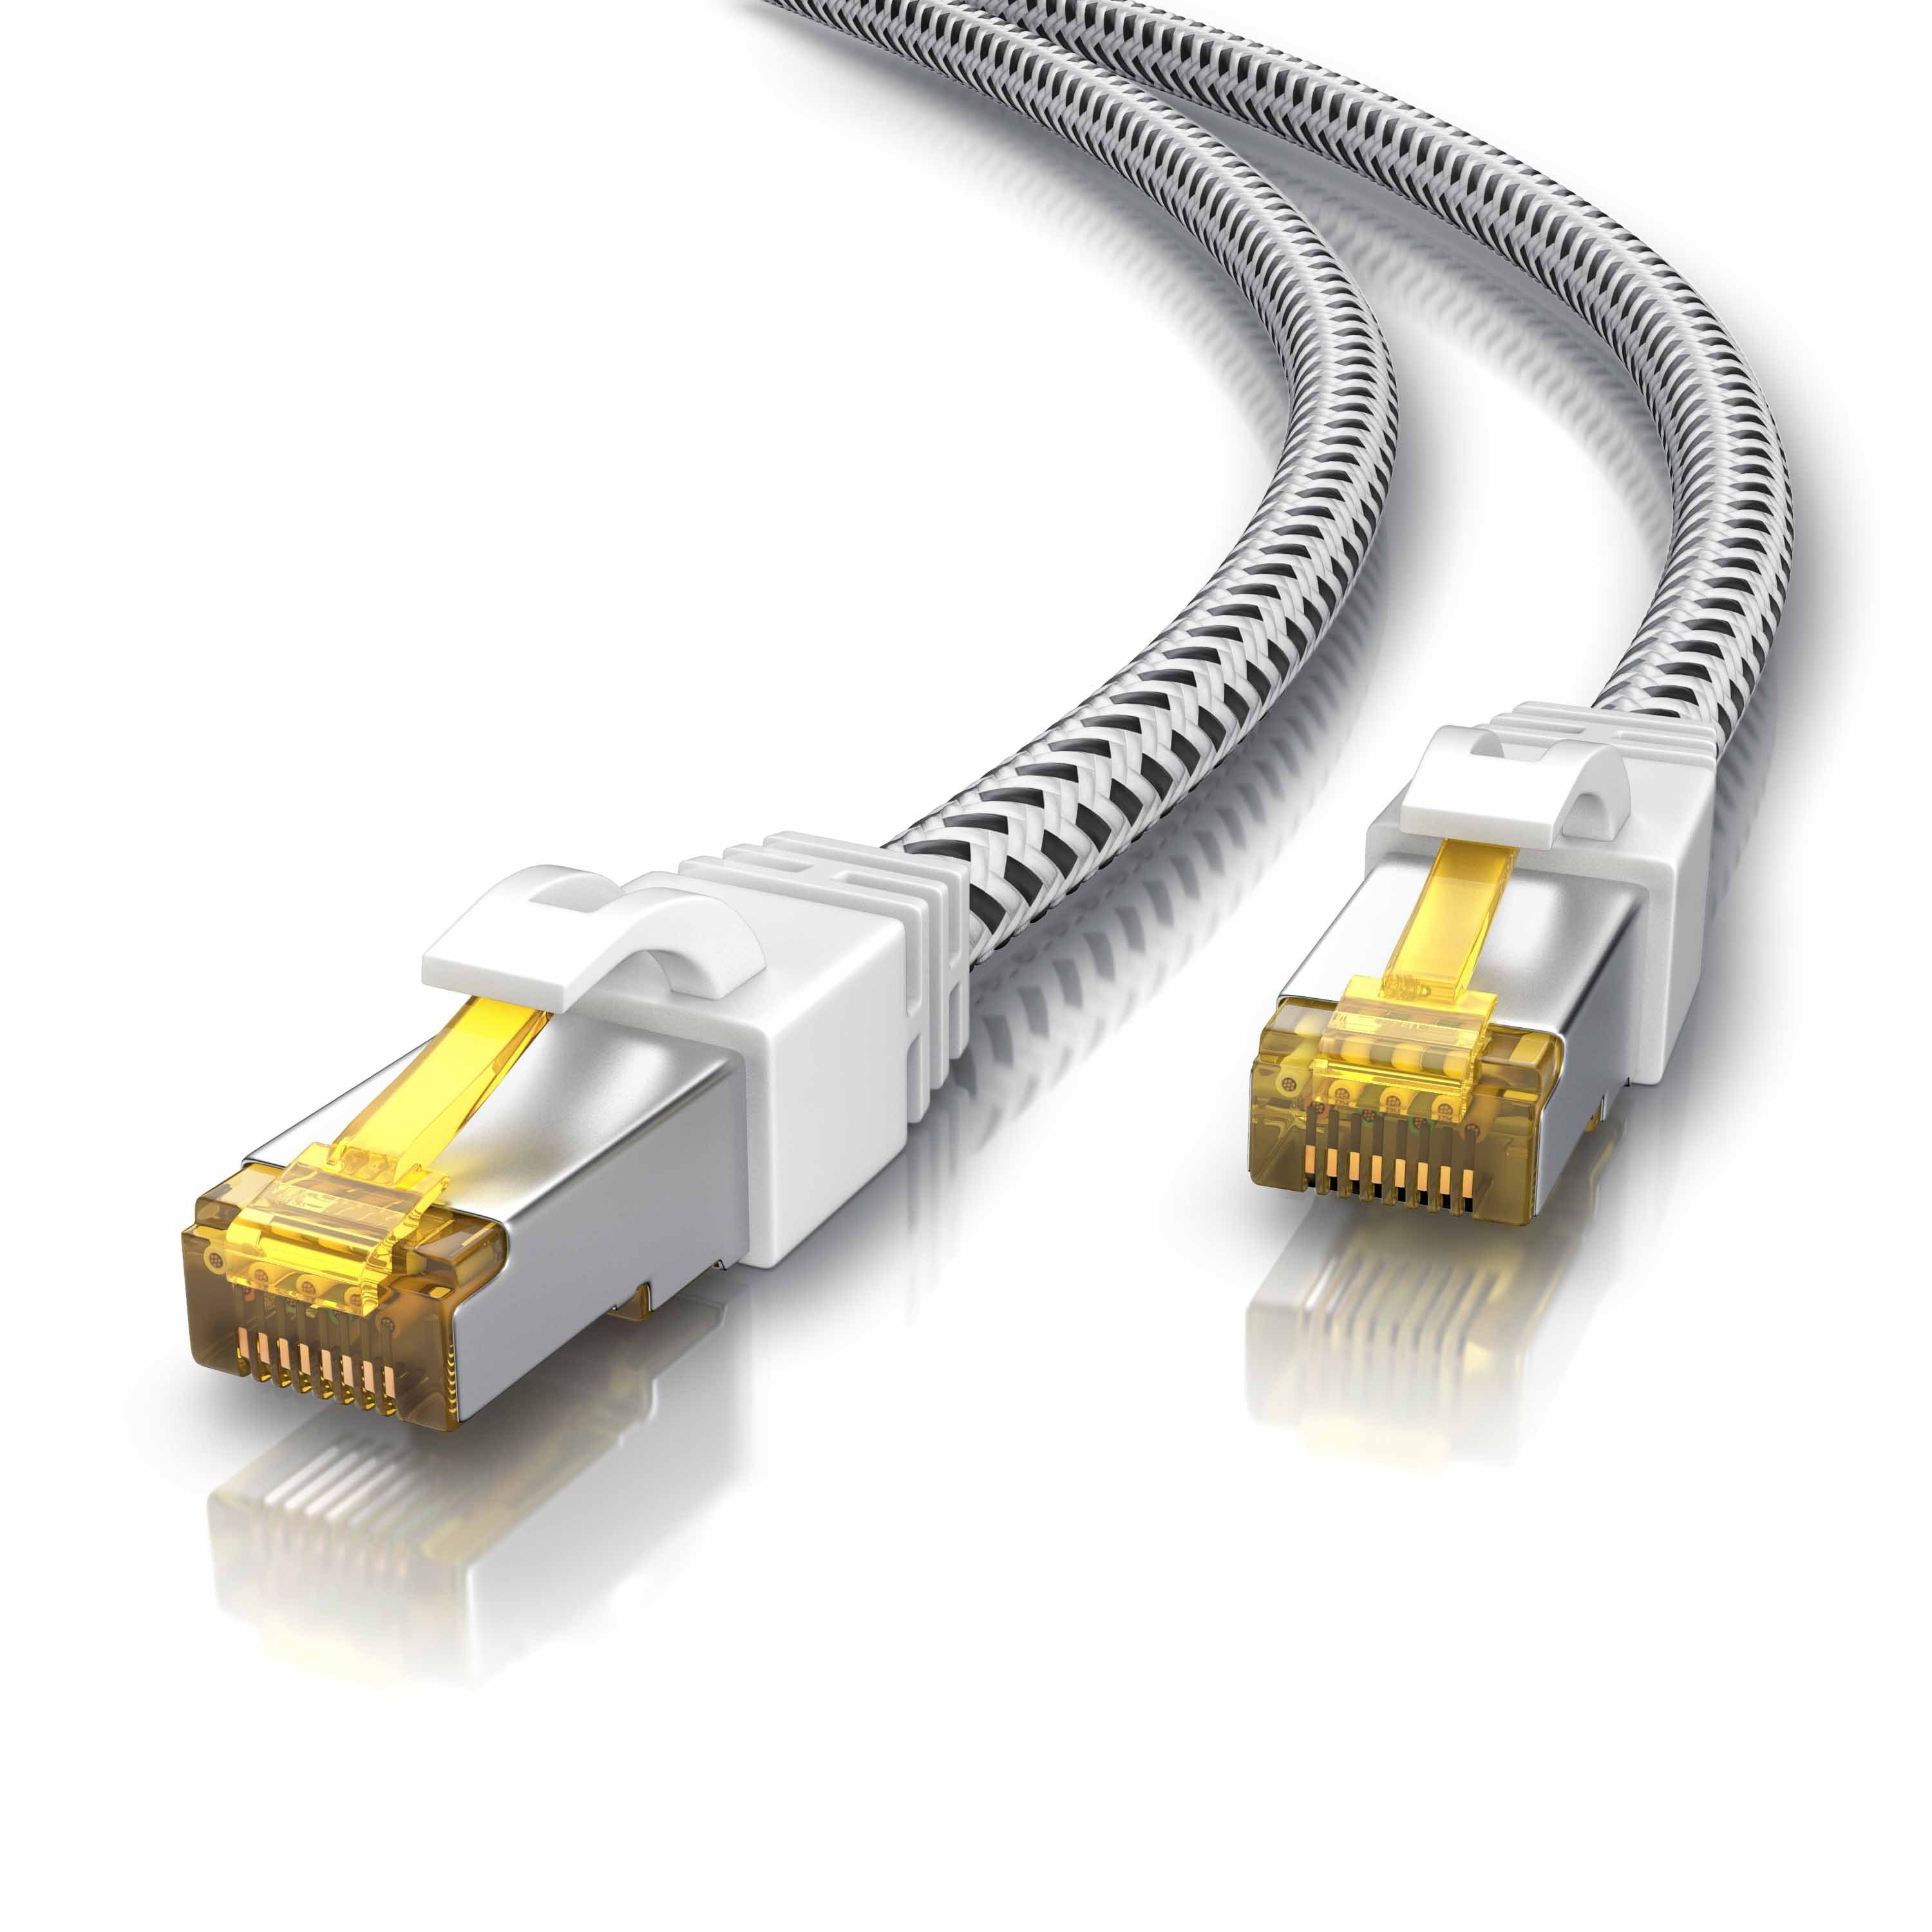 Primewire 1,0 m CAT.7 Gigabit Ethernet Lan Netzwerkkabel Flachband RJ45 Stecker 